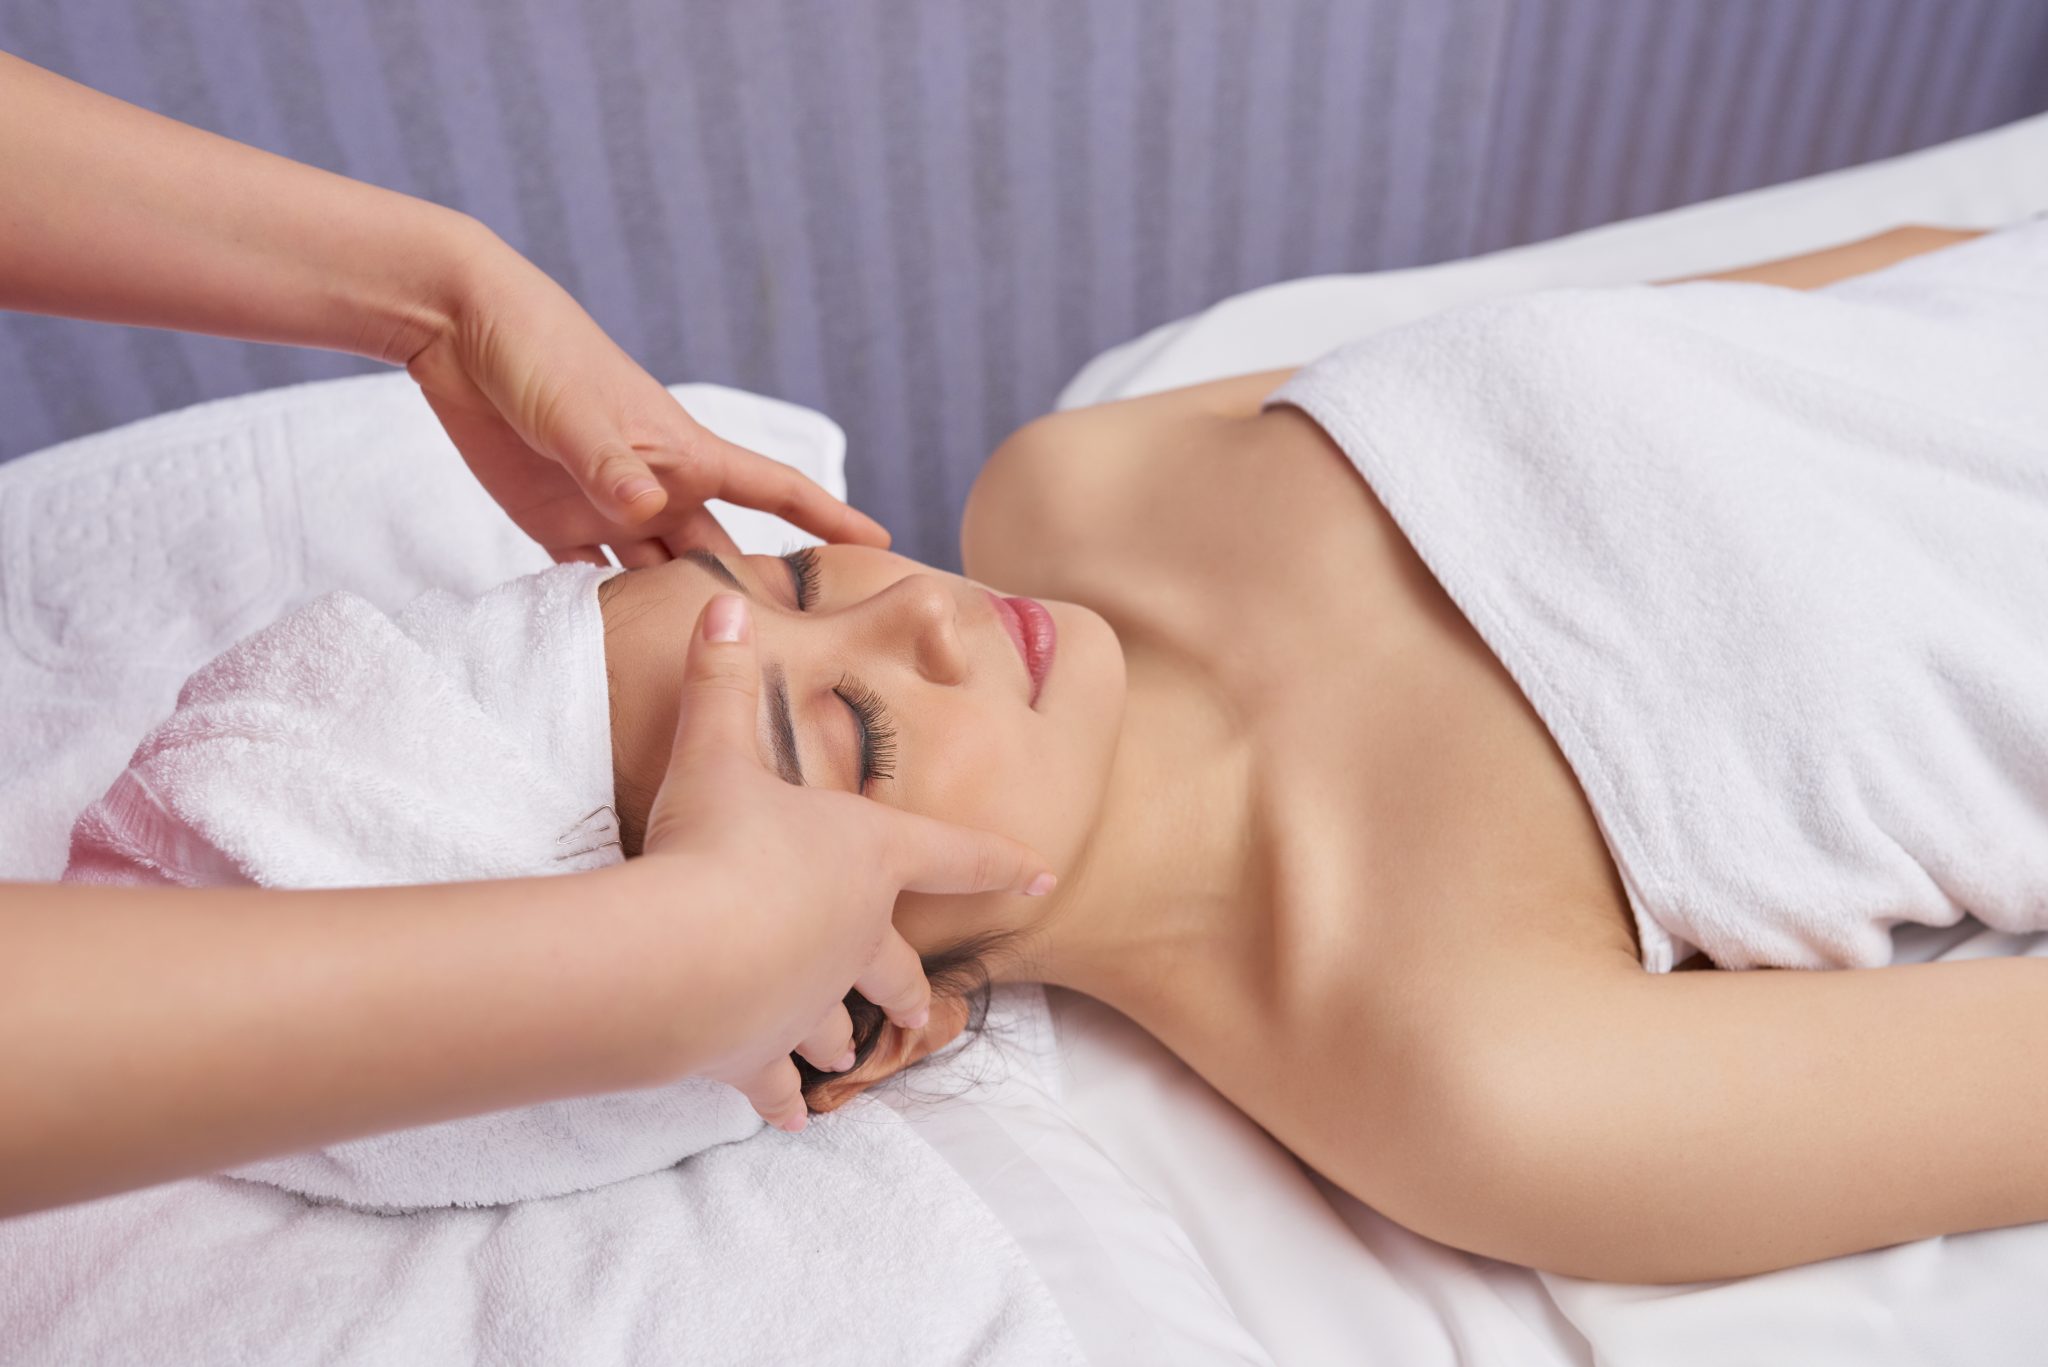 Hoofdmassage | Wellness Compleet Almelo | woman enjoying face massage 2021 08 27 09 29 09 utc 1